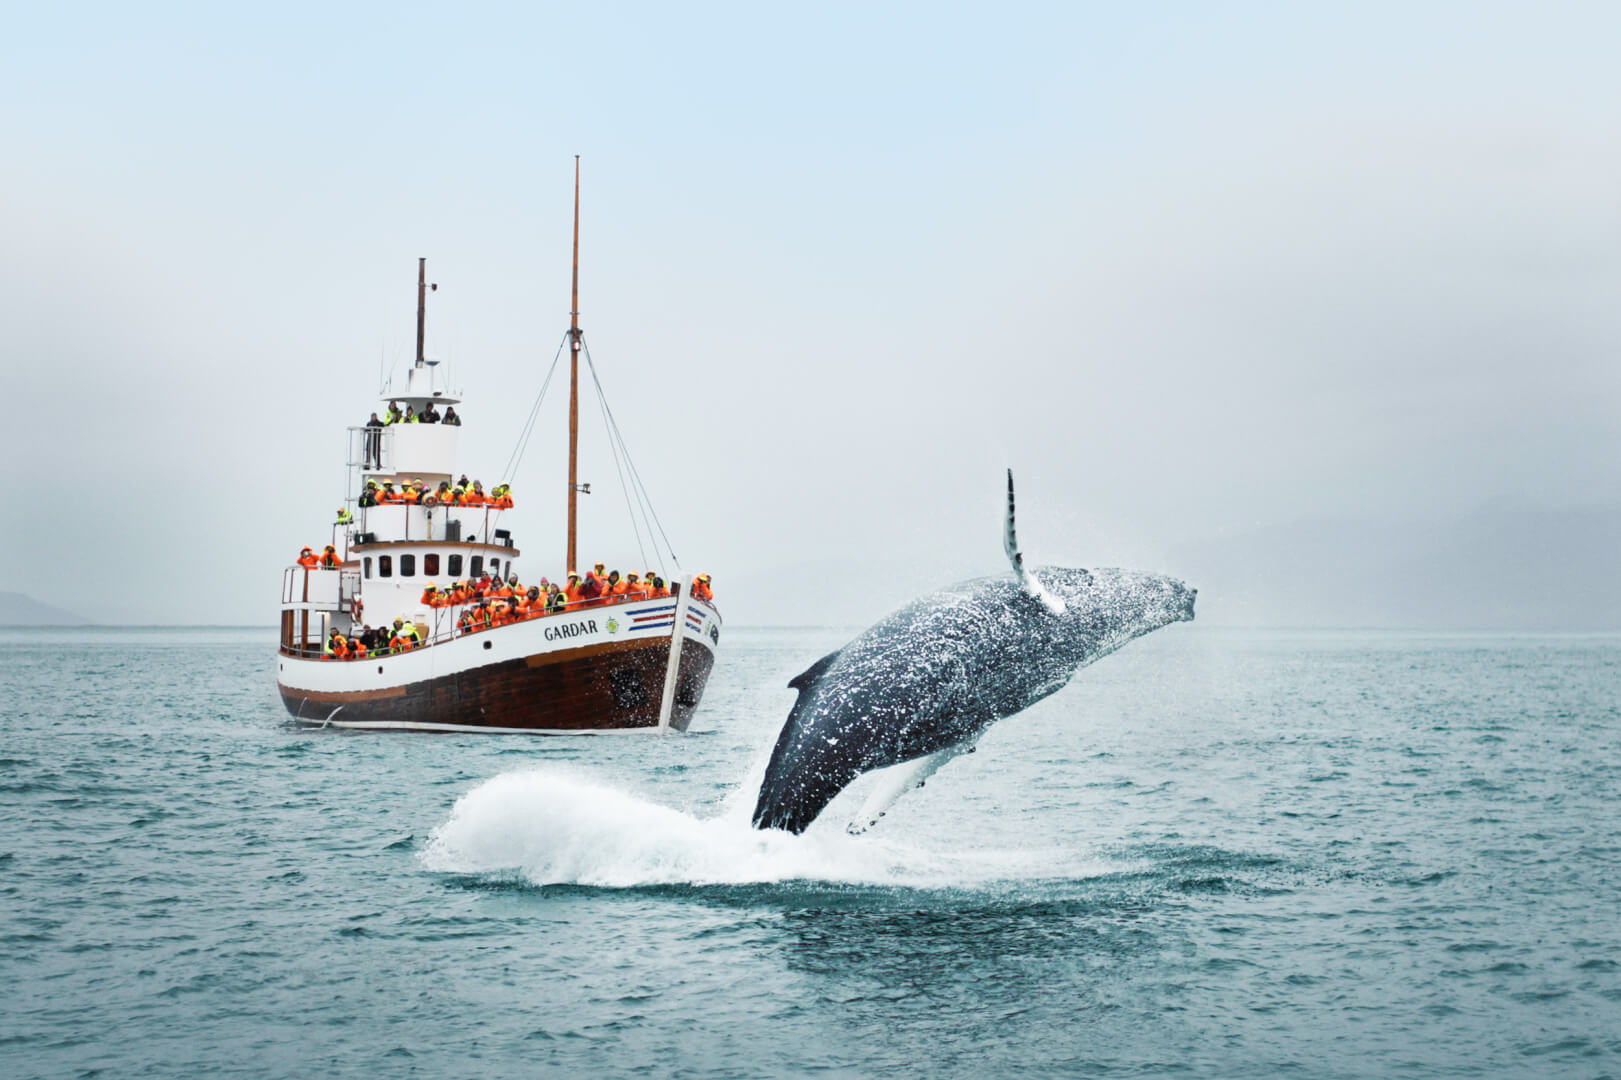 barco cheio de pessoas observa baleia no mar - o que fazer em reykjavik